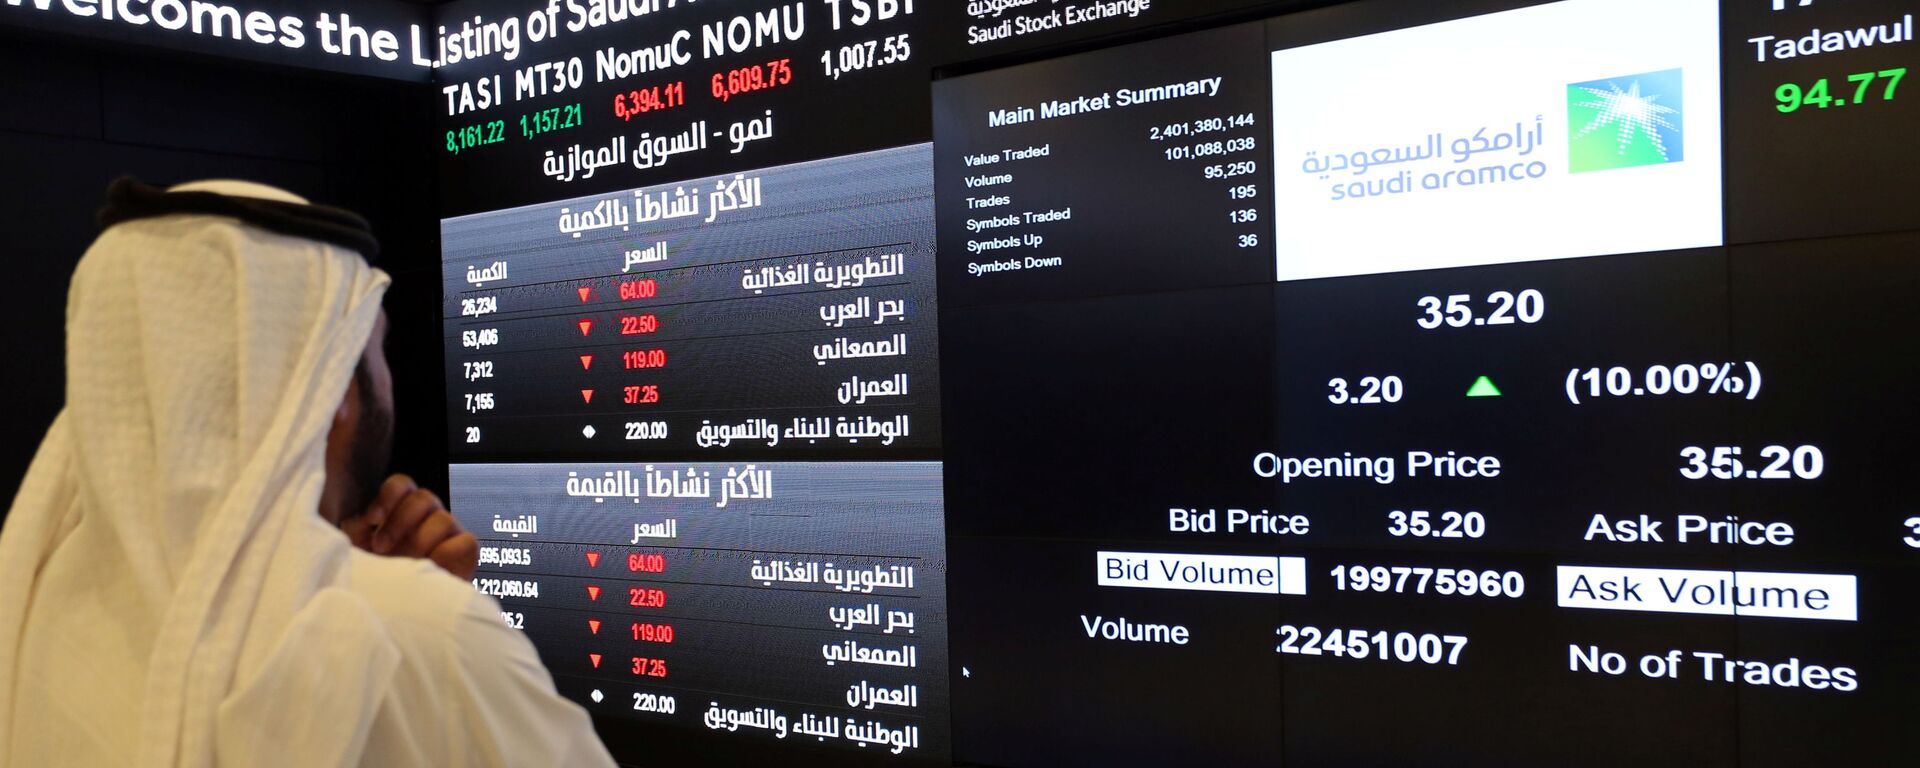 شاشة تعرض معلومات الأسهم في السوق المالية السعودية (تداول)، في الرياض، السعودية 11 ديسمبر 2019 - سبوتنيك عربي, 1920, 17.12.2020